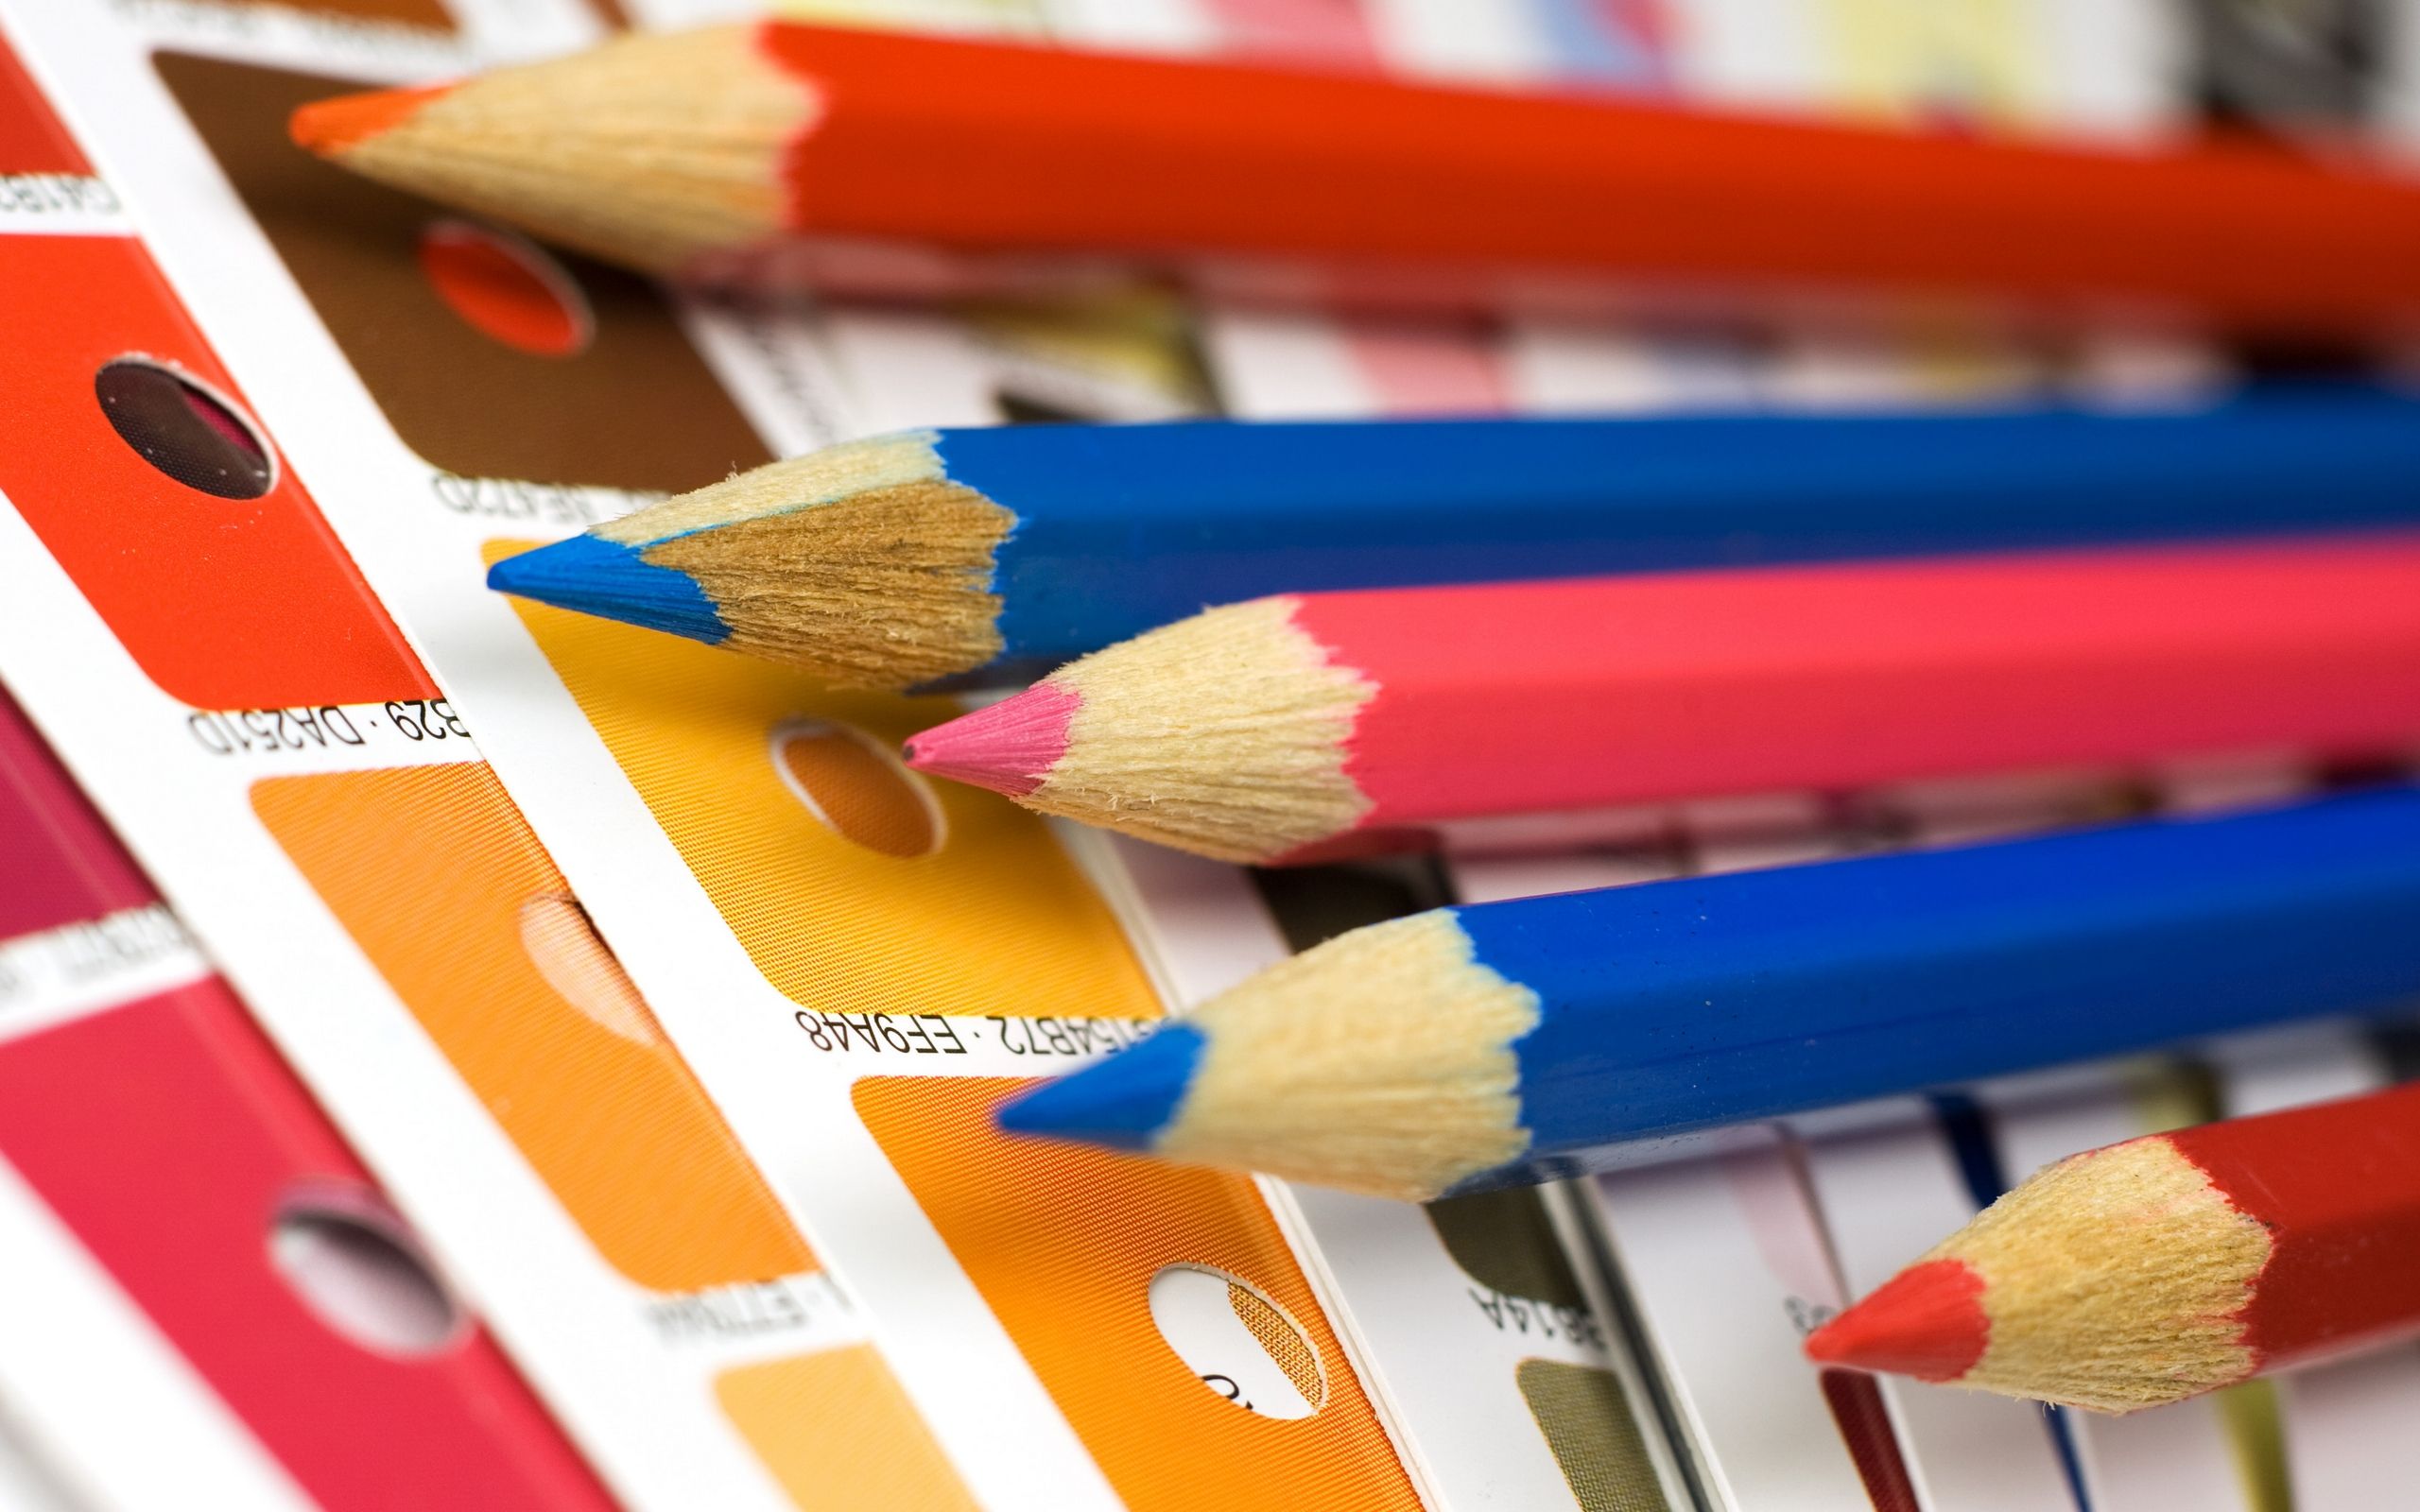 Colored pencils - Pencils Wallpaper (24173442) - Fanpop